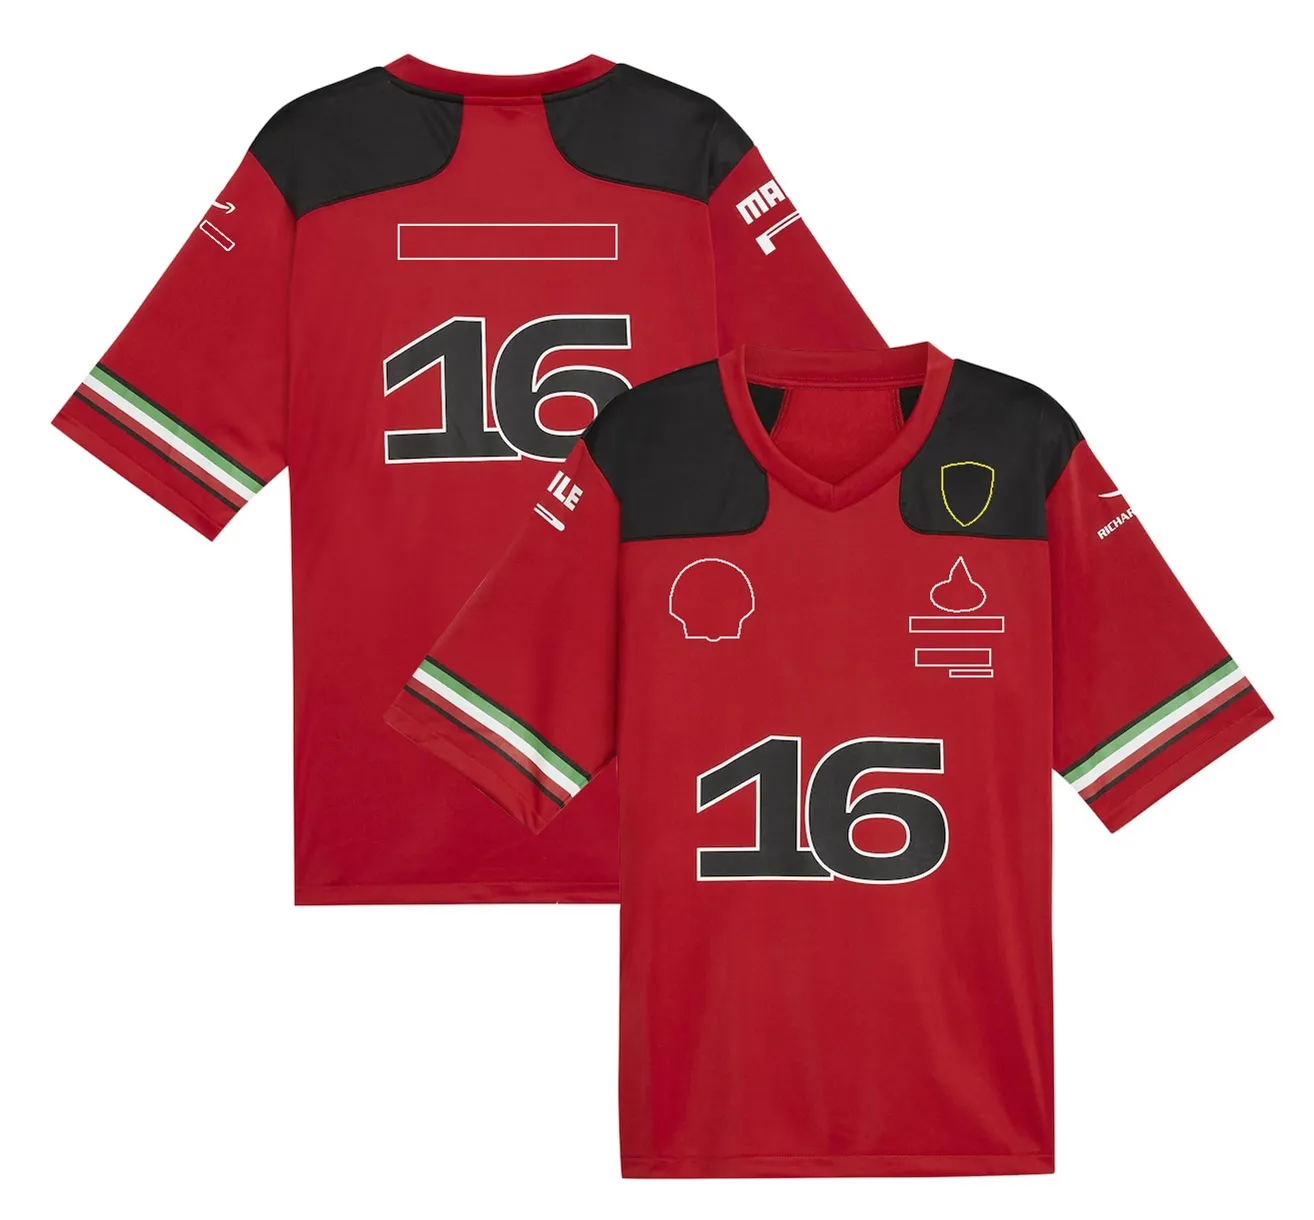 2023 F1 Takım Yarışı T-Shirt Formül 1 Sürücü Futbol Tişörtleri Yeni Sezon Yarış Giyim Kırmızı Otomobil Fanları Jersey Yaz Mens Tops 5A7U